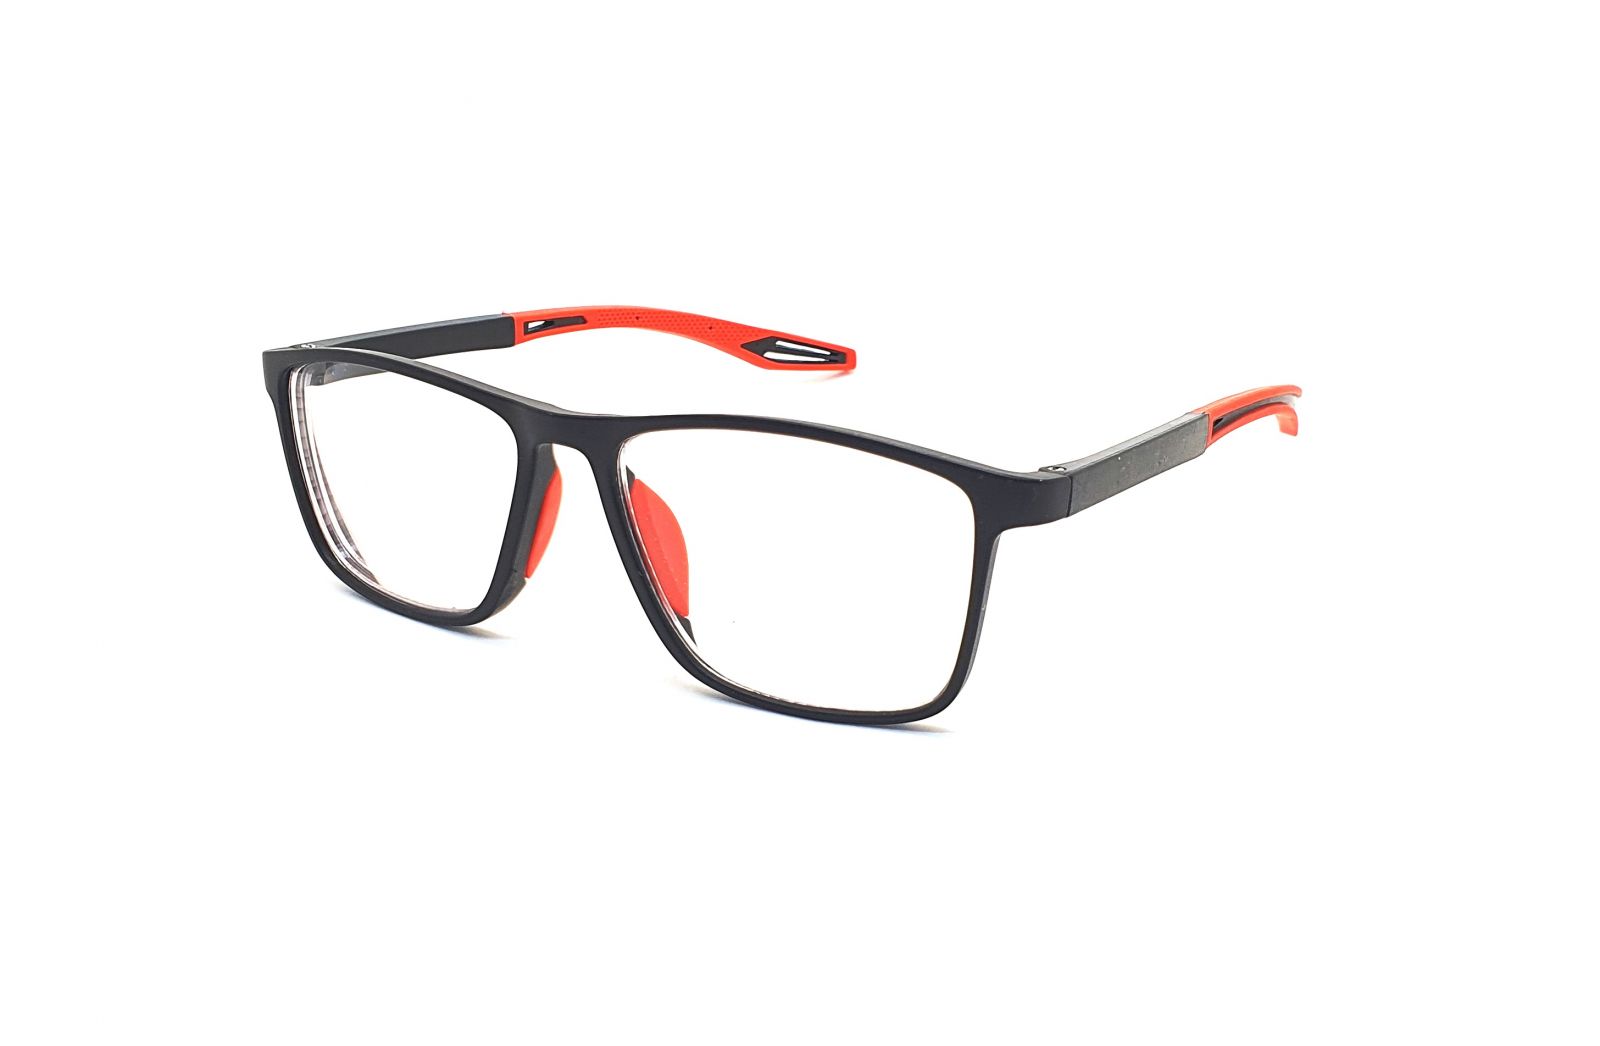 Samozabarvovací dioptrické brýle F04 / -1,50 black/red